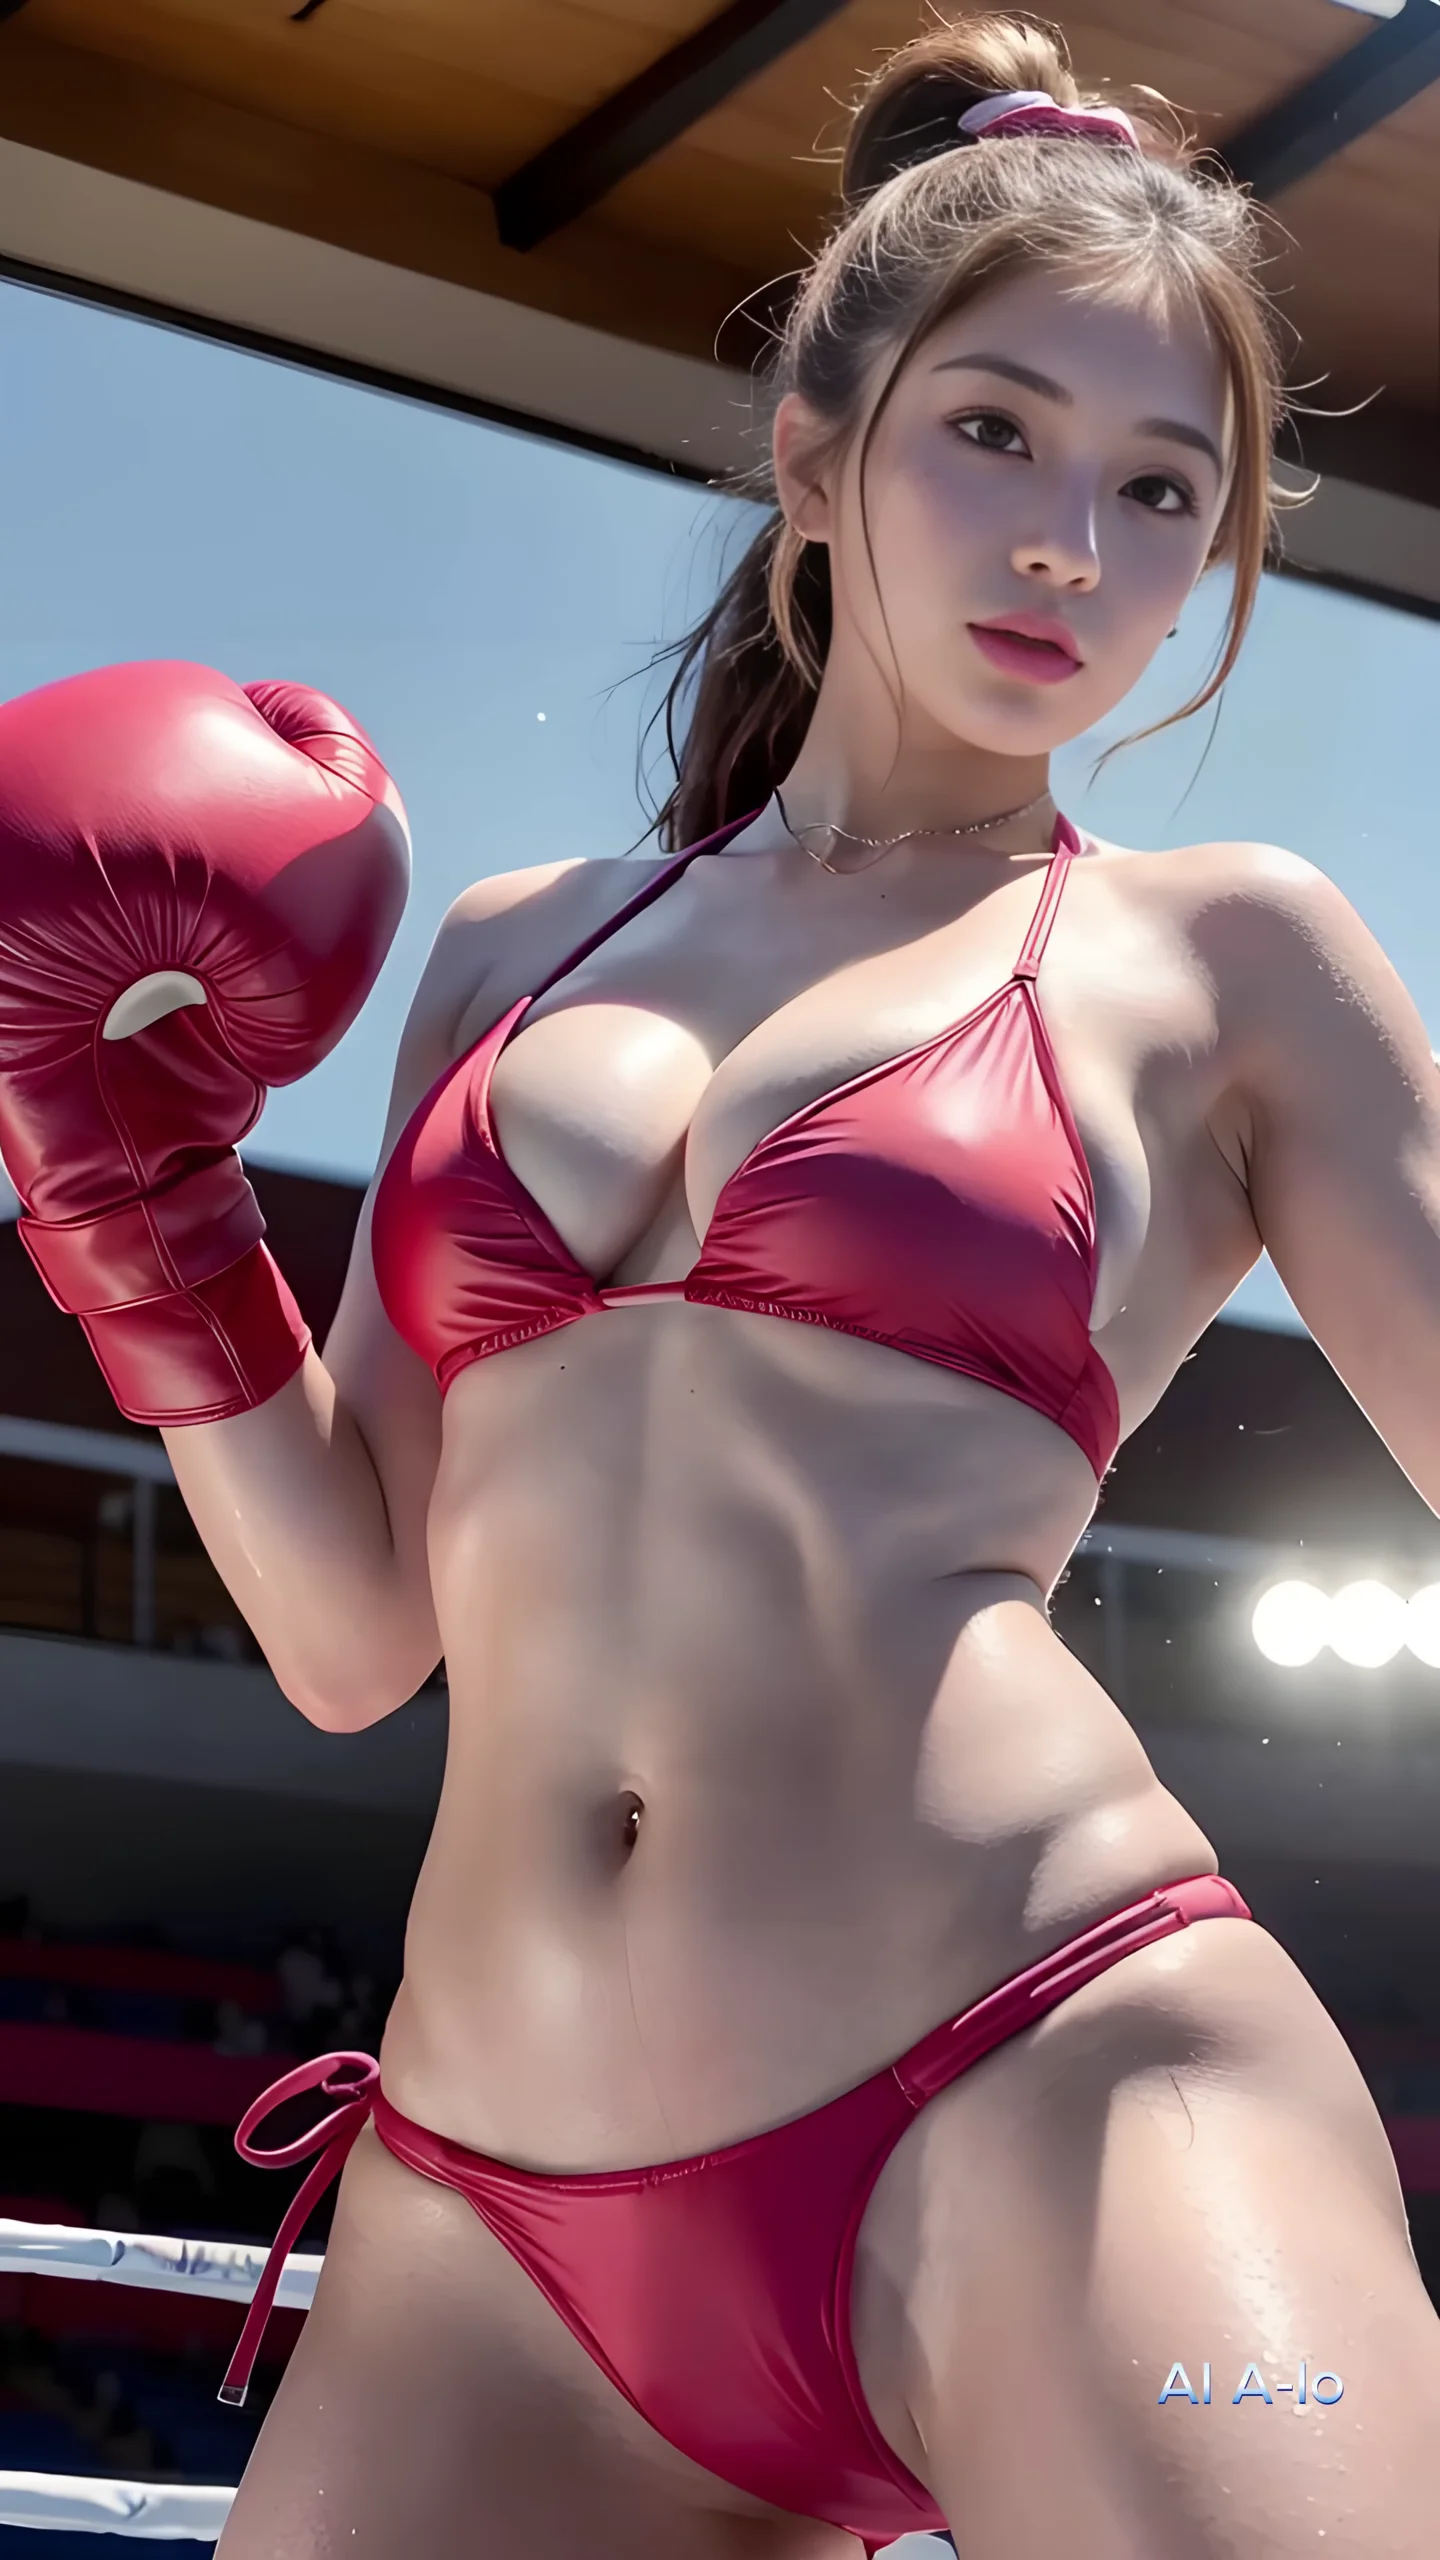 Ai Lookbook Bikini Boxing Images 12